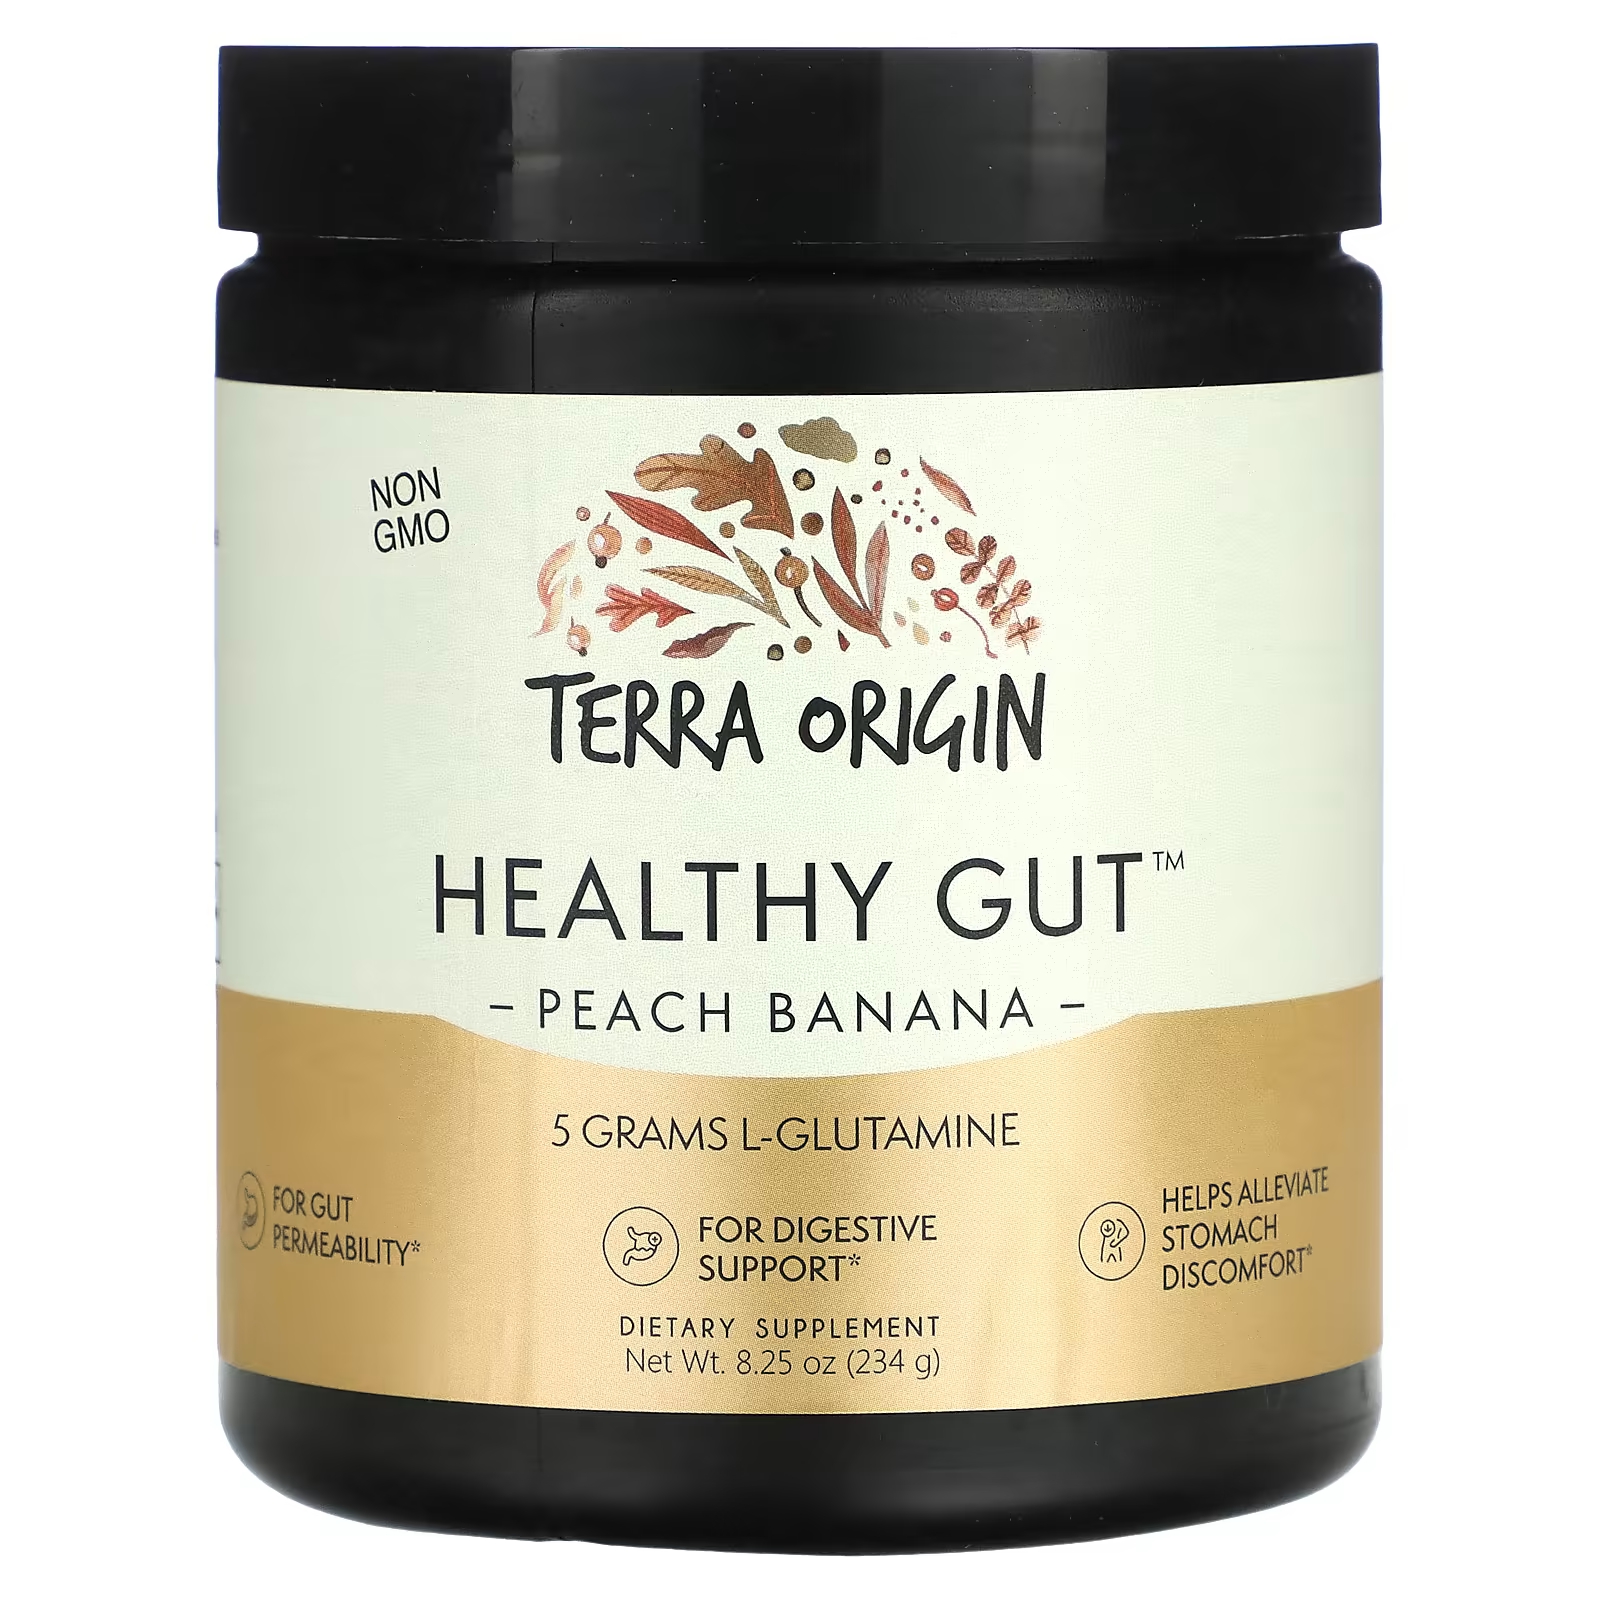 Пищевая добавка Terra Origin Healthy Gut персик и банан, 234 г terra origin здоровый кишечник персик банан 8 25 унции